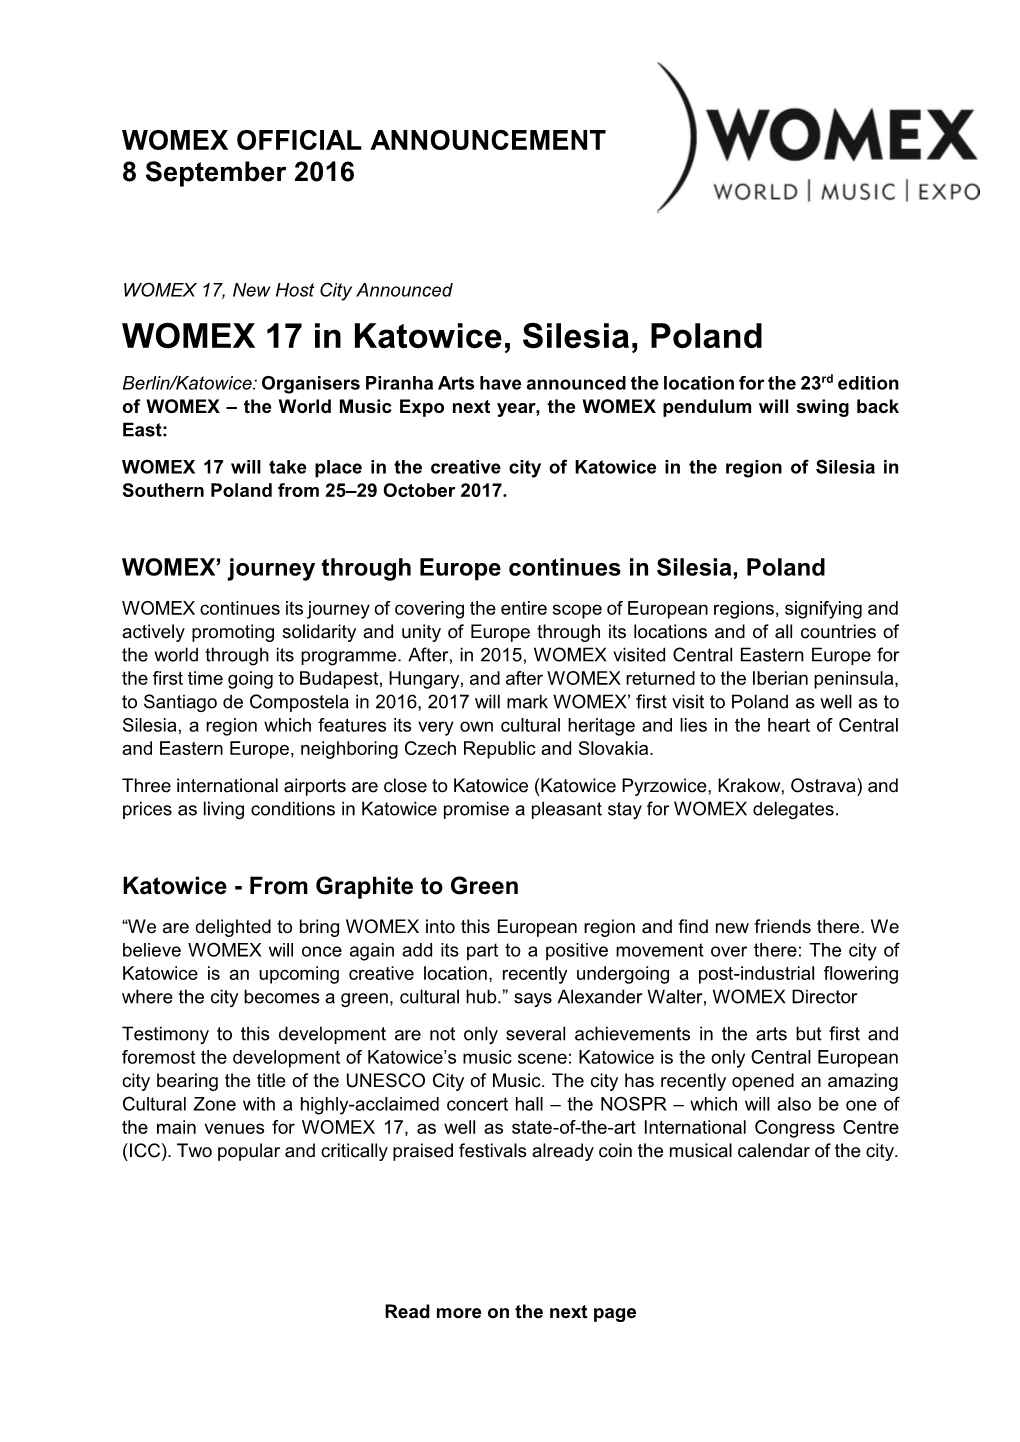 WOMEX 17 in Katowice, Silesia, Poland